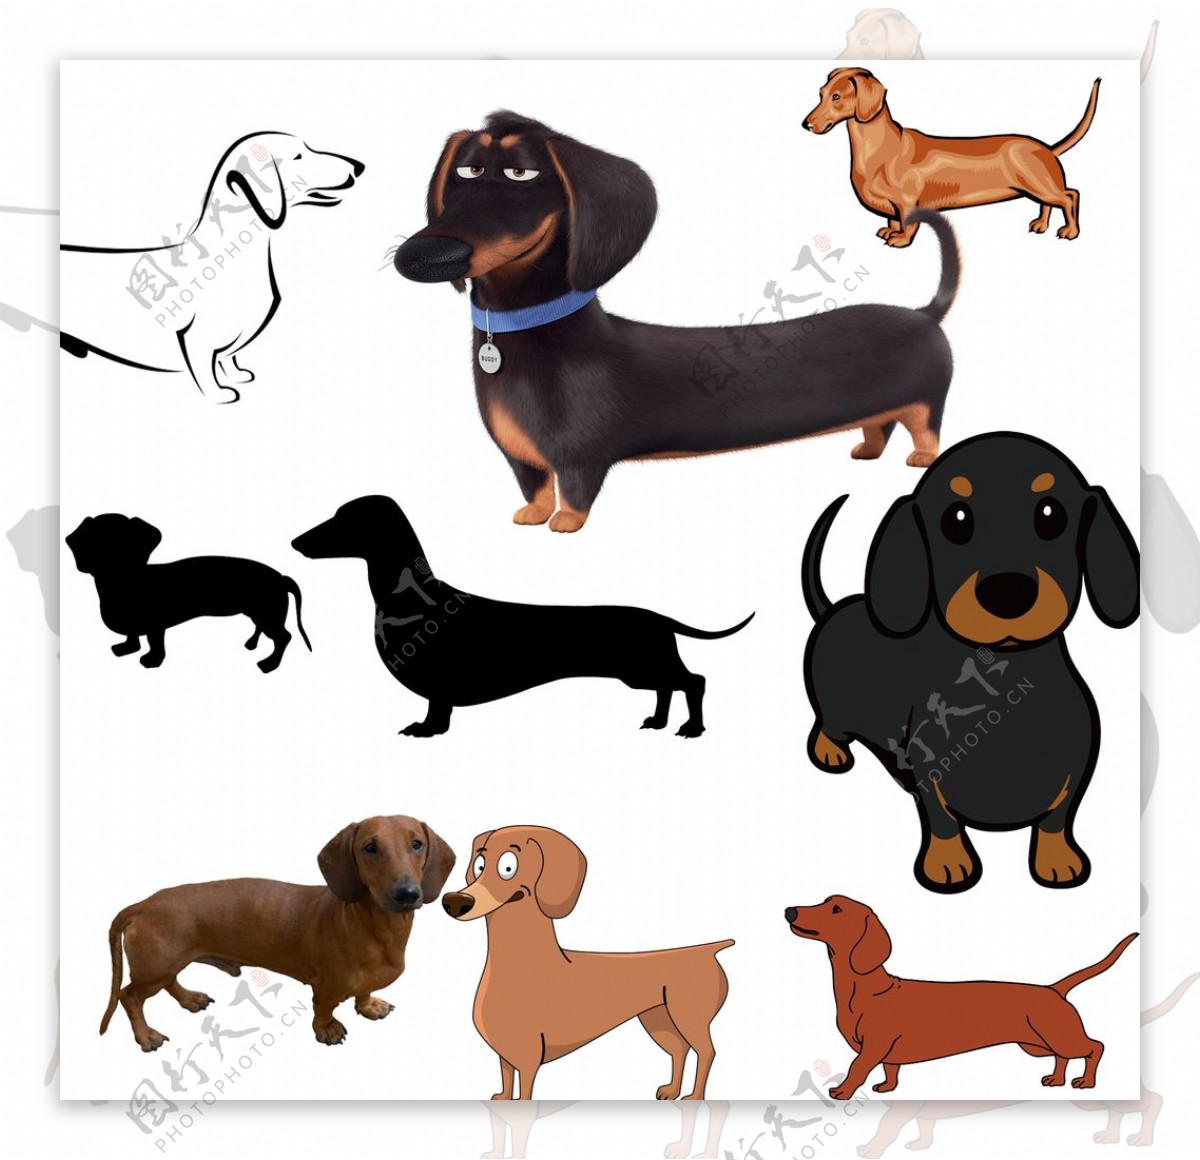 免费照片： 腊肠, 狗, 宠物, 纯种, 小, 可爱, 犬, 动物, 狗, 肖像